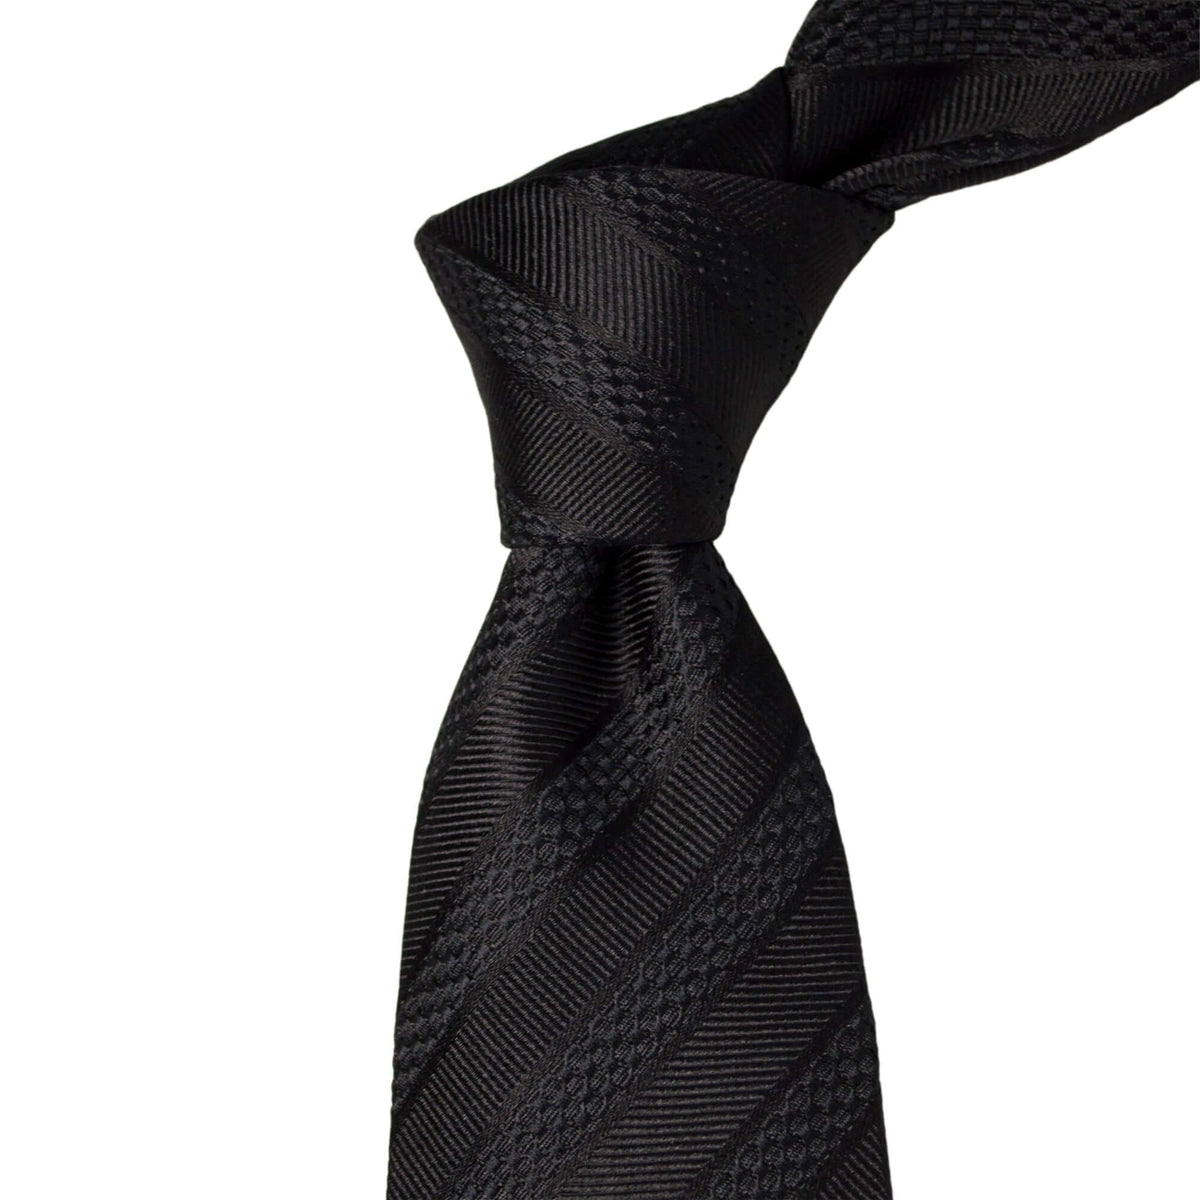 8cm Woven Striped Necktie in Black-Neckties-A.Azthom-Cufflinks.com.sg